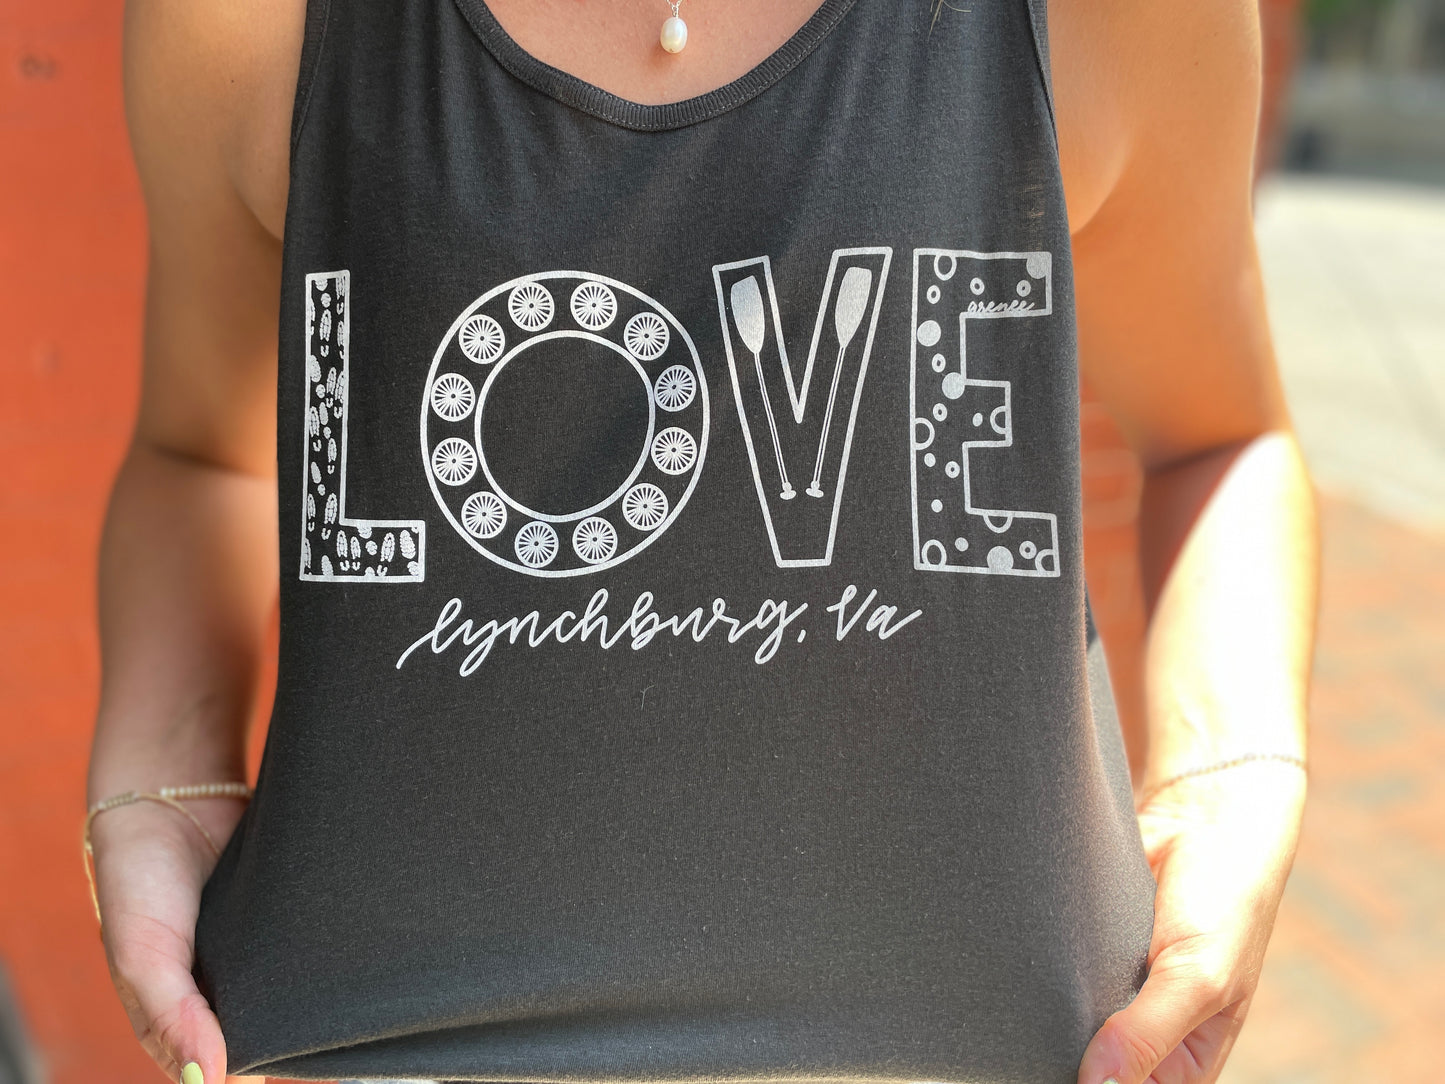 Lynchburg "Love" Sign Tank Top